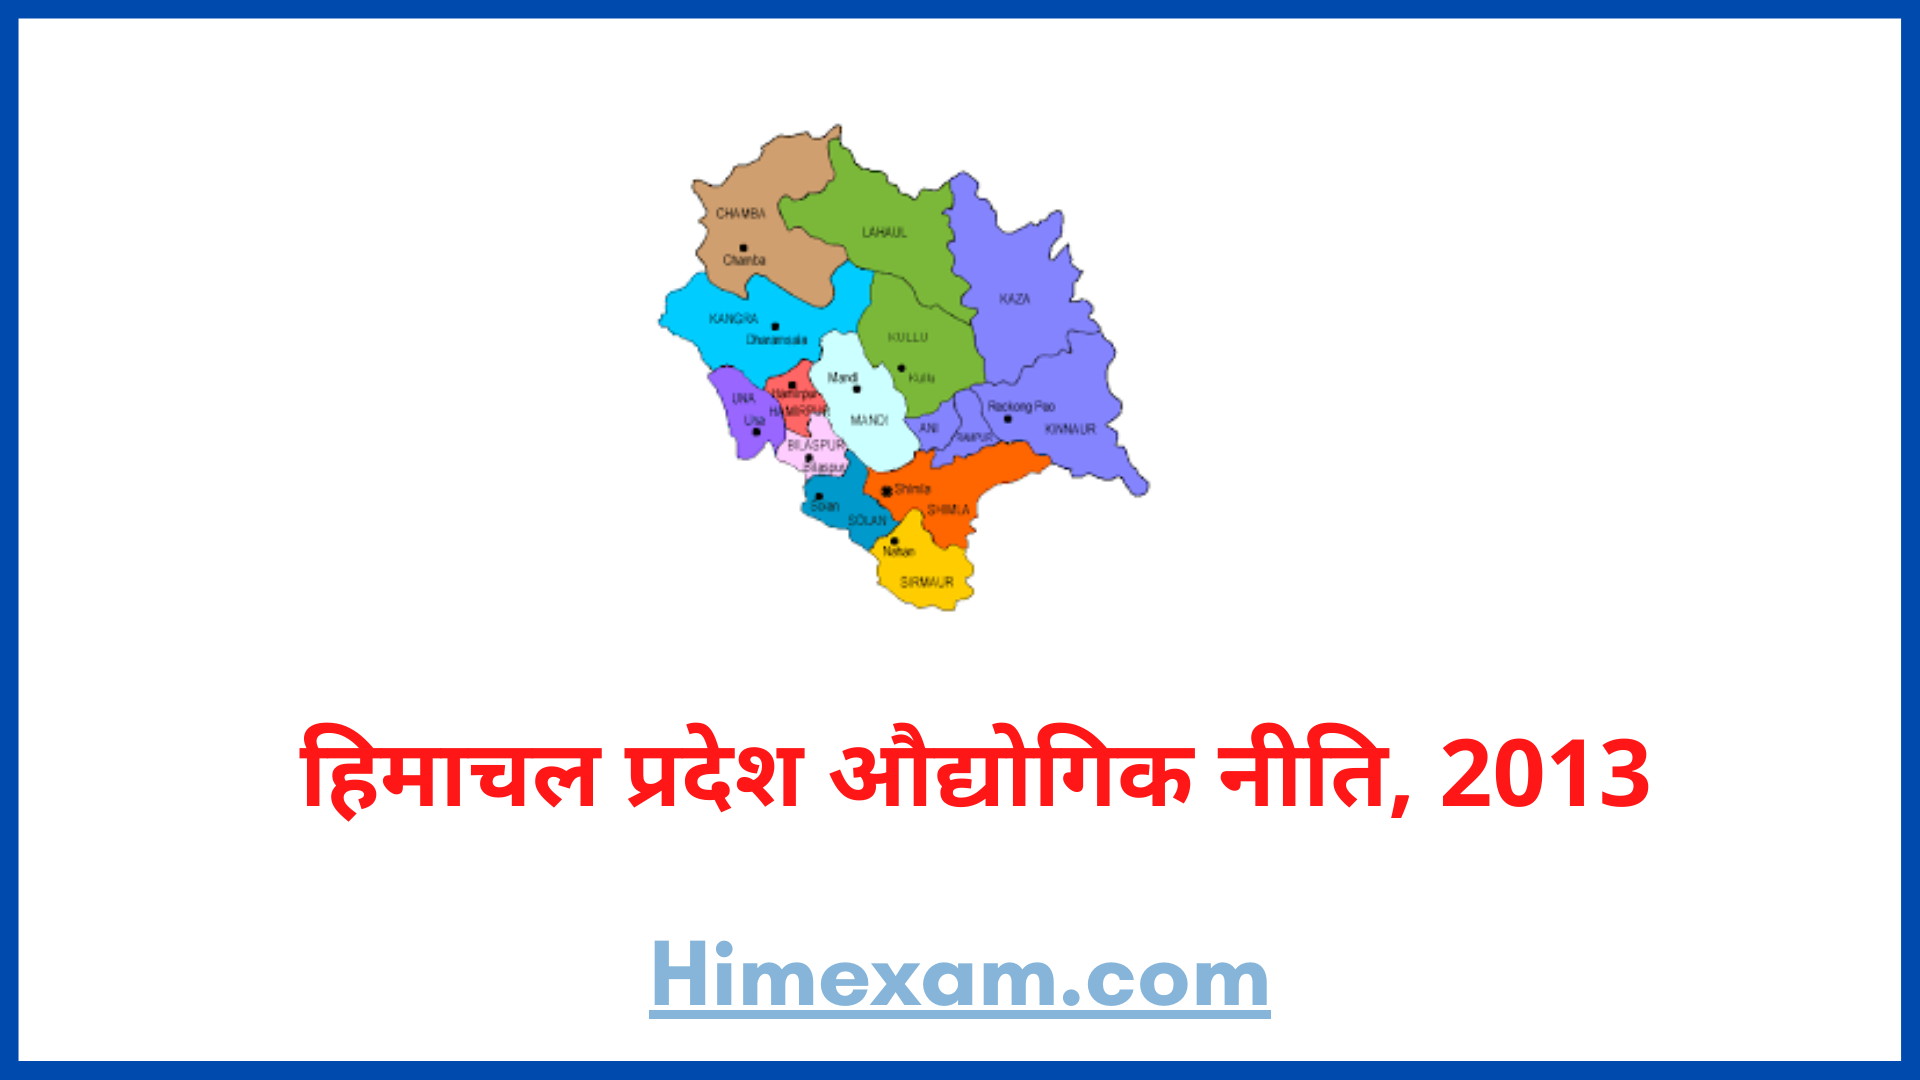 हिमाचल प्रदेश औद्योगिक नीति, 2013